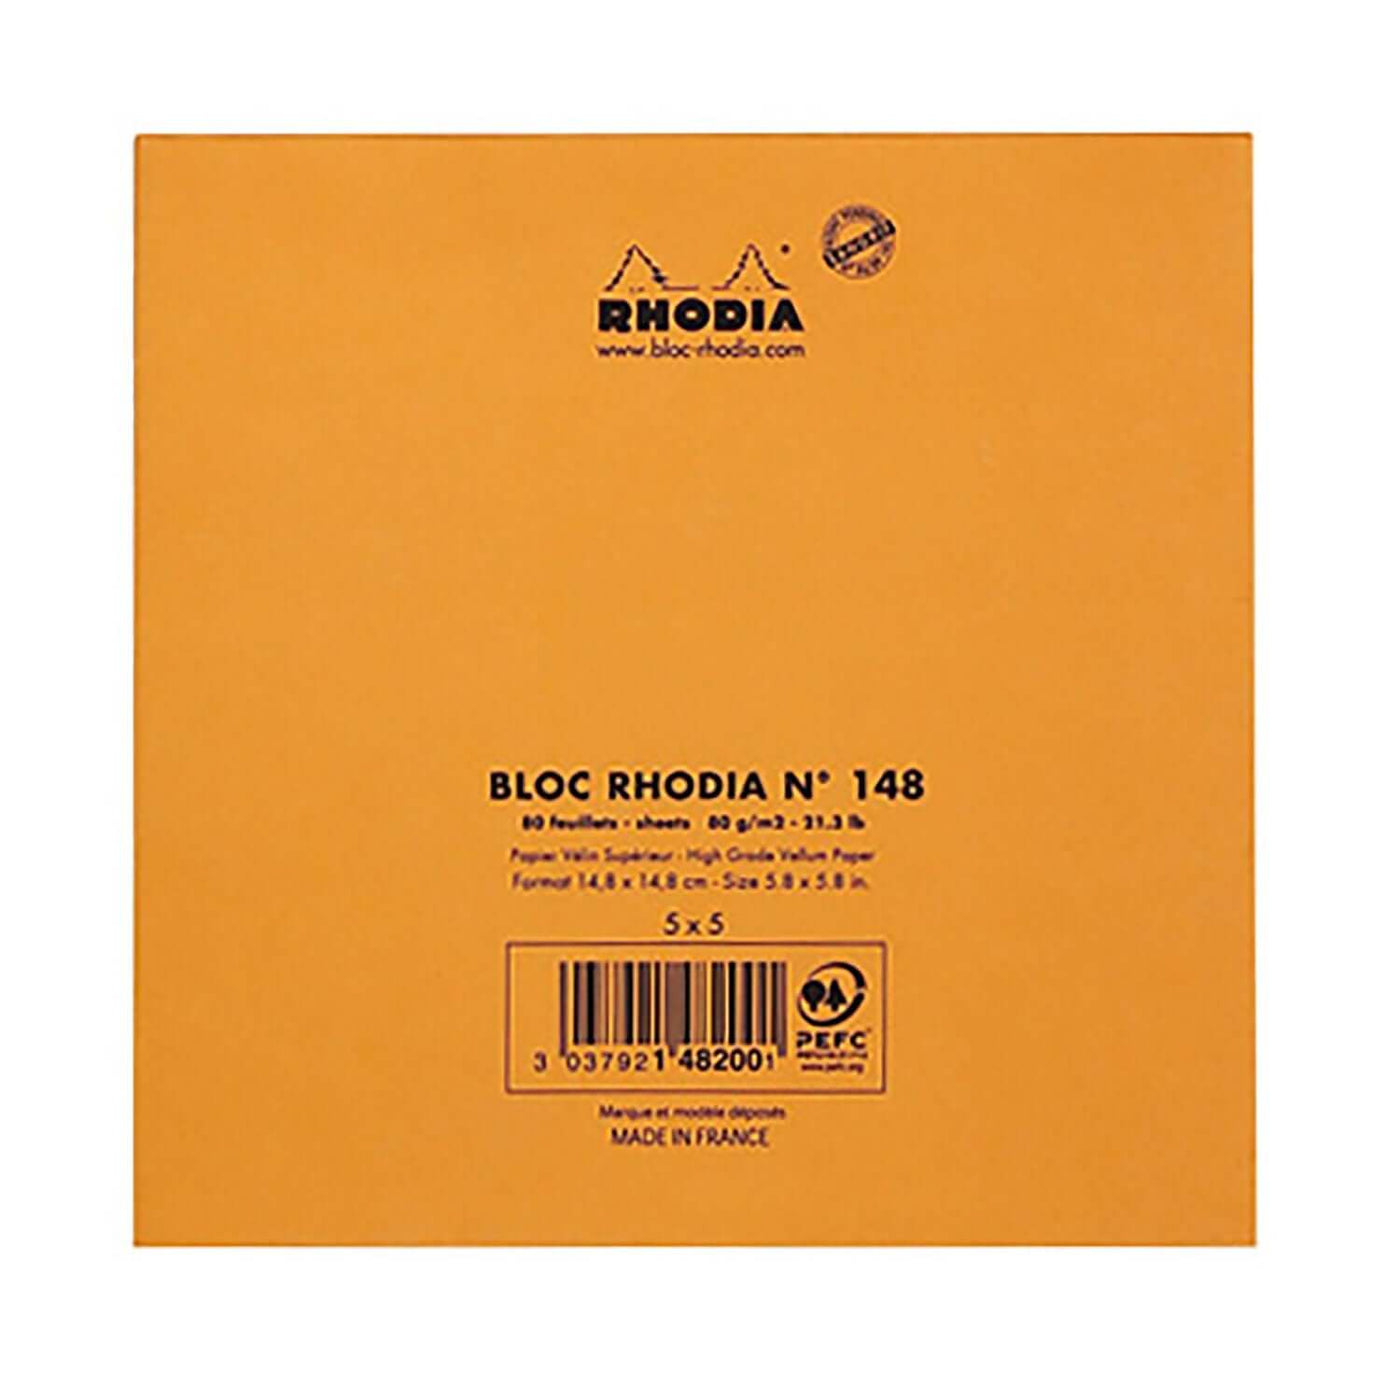 Rhodia Le Carre Notepad, Orange - Ruled 6